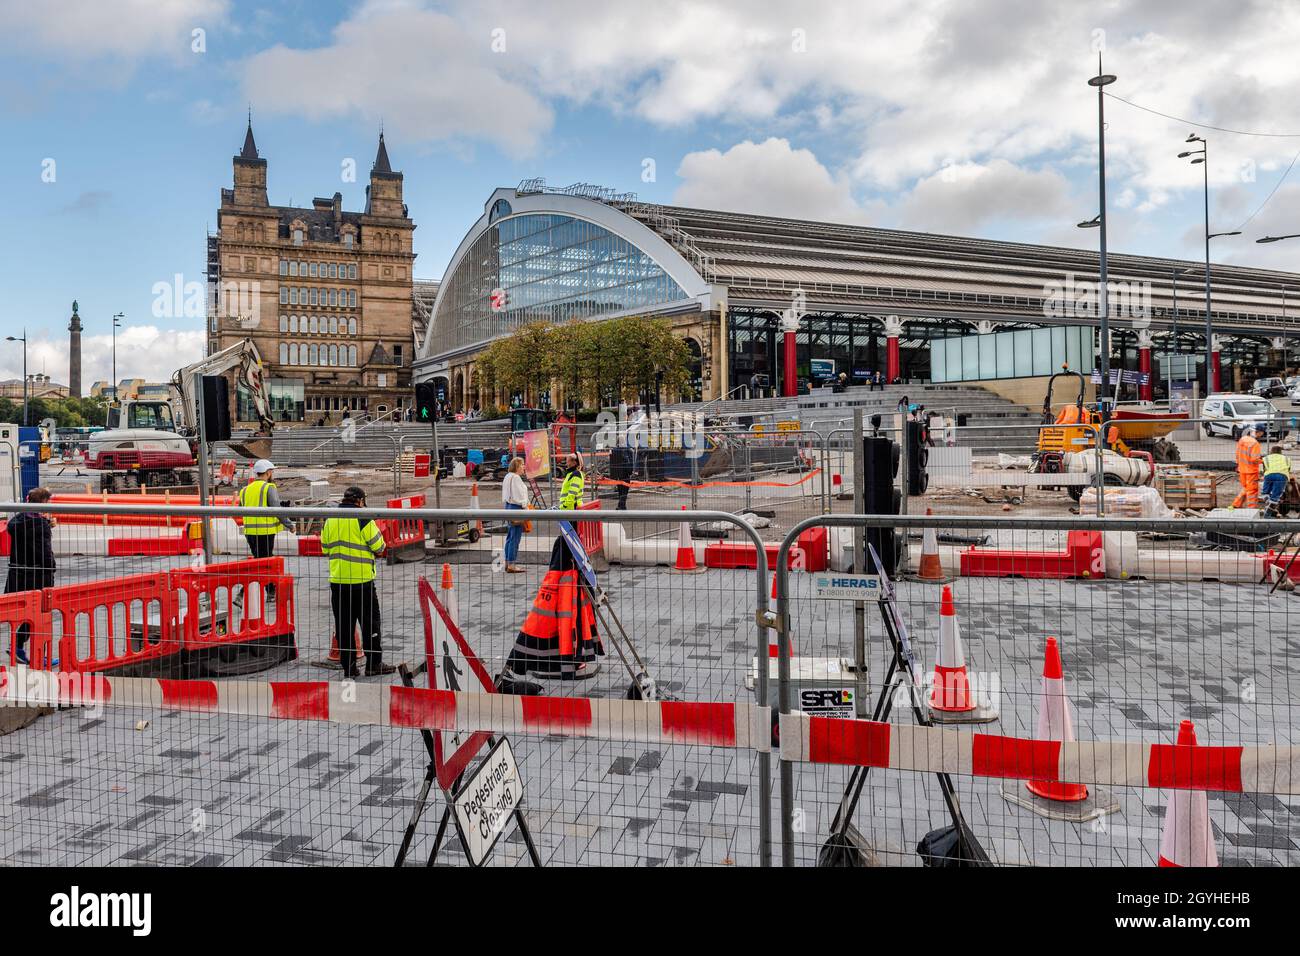 Stazione ferroviaria di Liverpool Lime Street con lavori stradali in corso, Liverpool, Merseyside, Regno Unito. Foto Stock